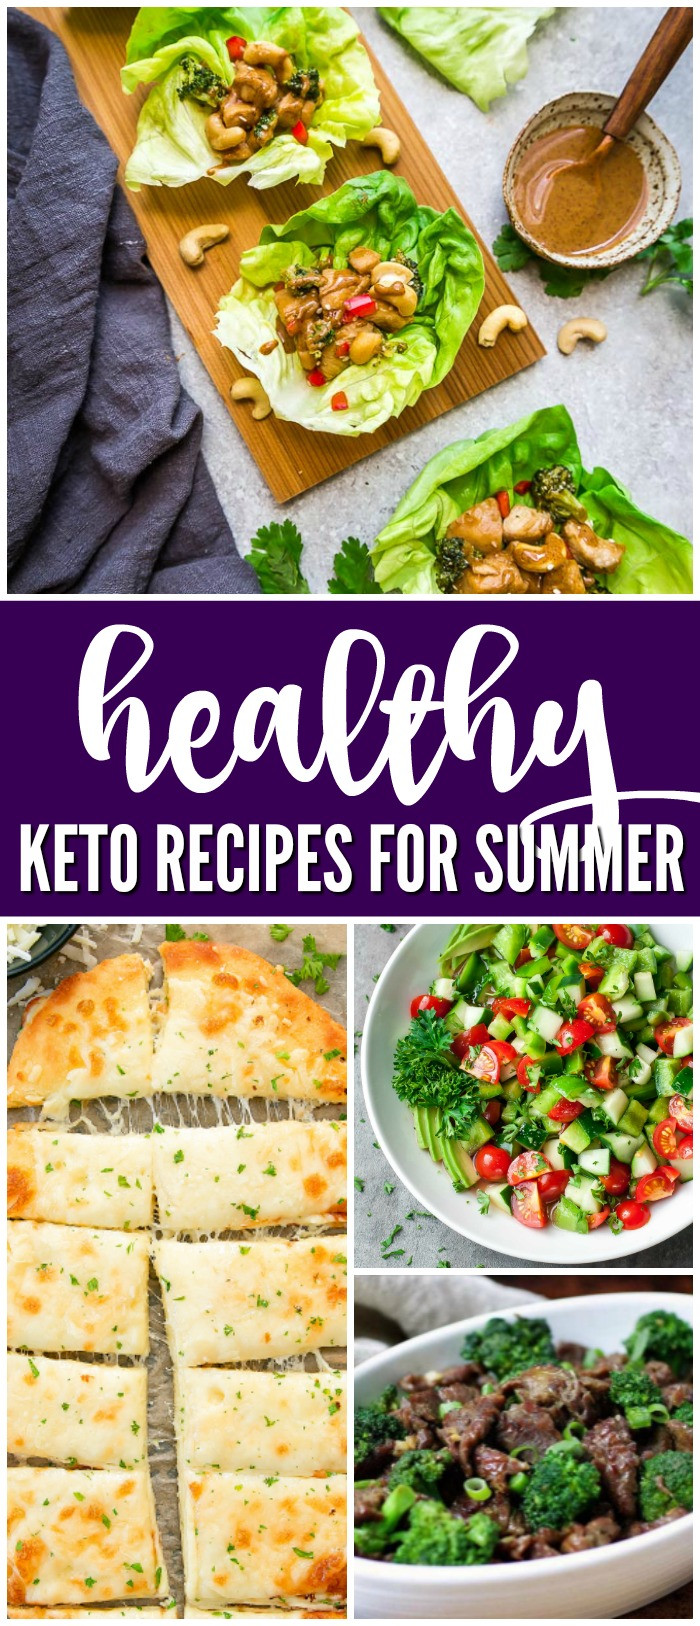 Summer Keto Recipes Dinner
 Healthy Keto Recipes for Summer